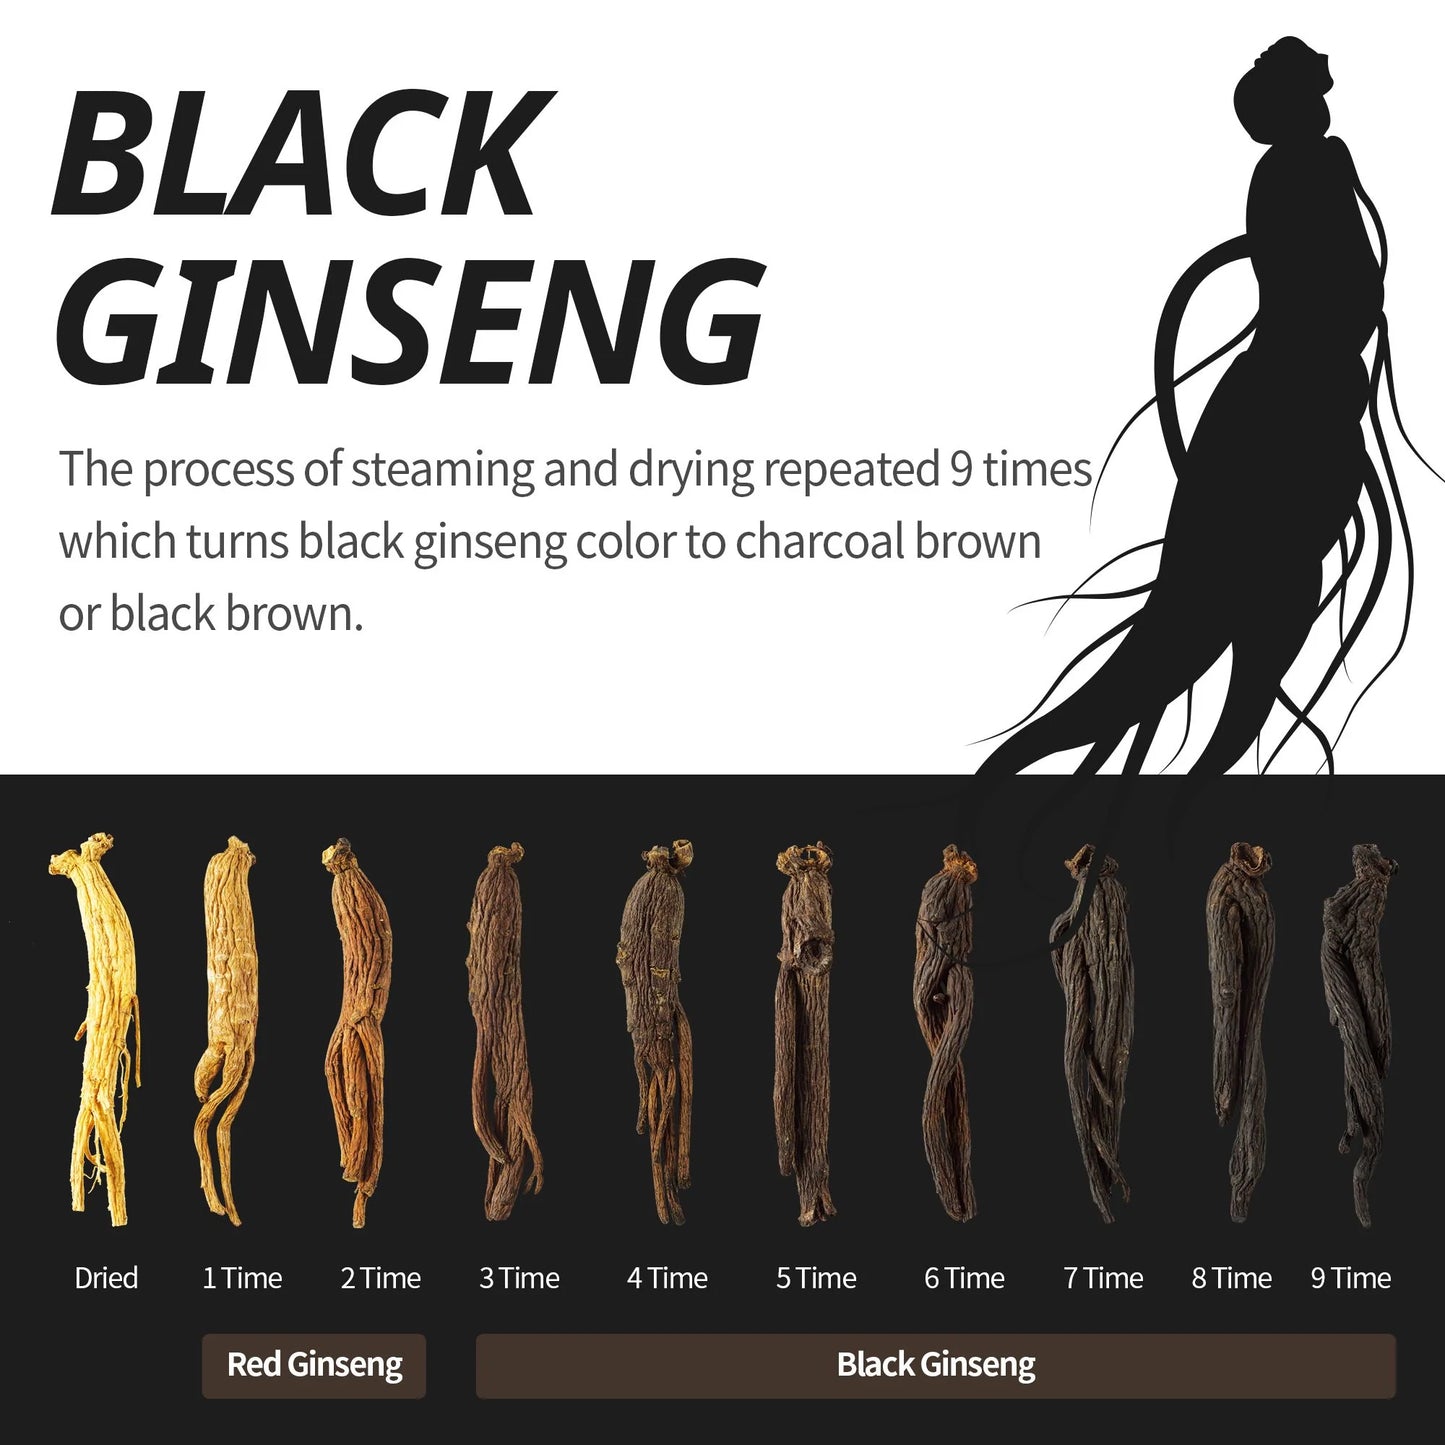 GINZAI Ginseng Elixir for Hair | 100ml